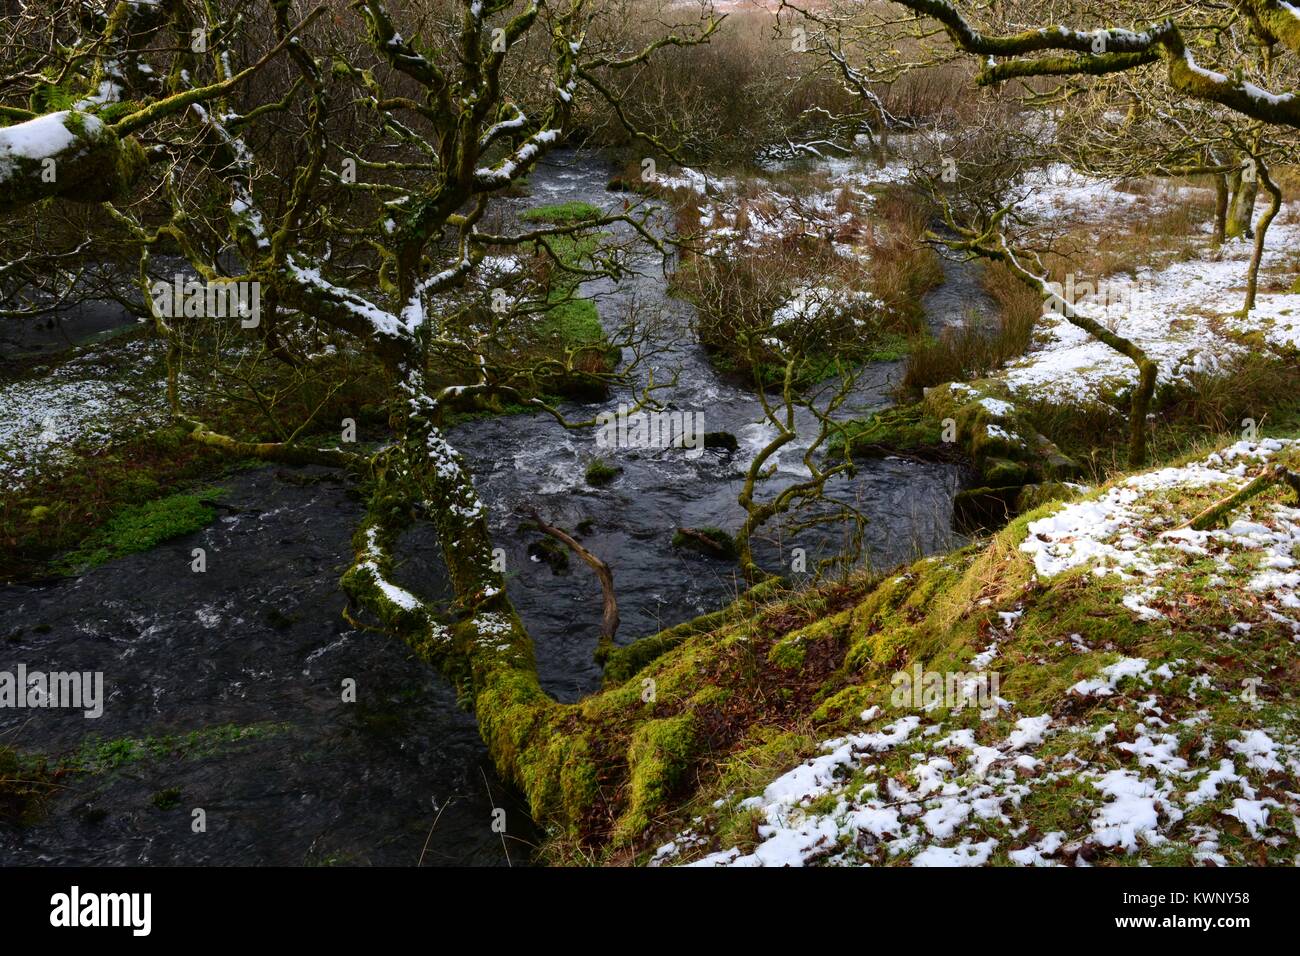 Près de la source de la rivière Loughor en hiver Montagne Noire Parc national de Brecon Beacons Fforset Fawr Geopark Carmarthenshire Wales UK Banque D'Images